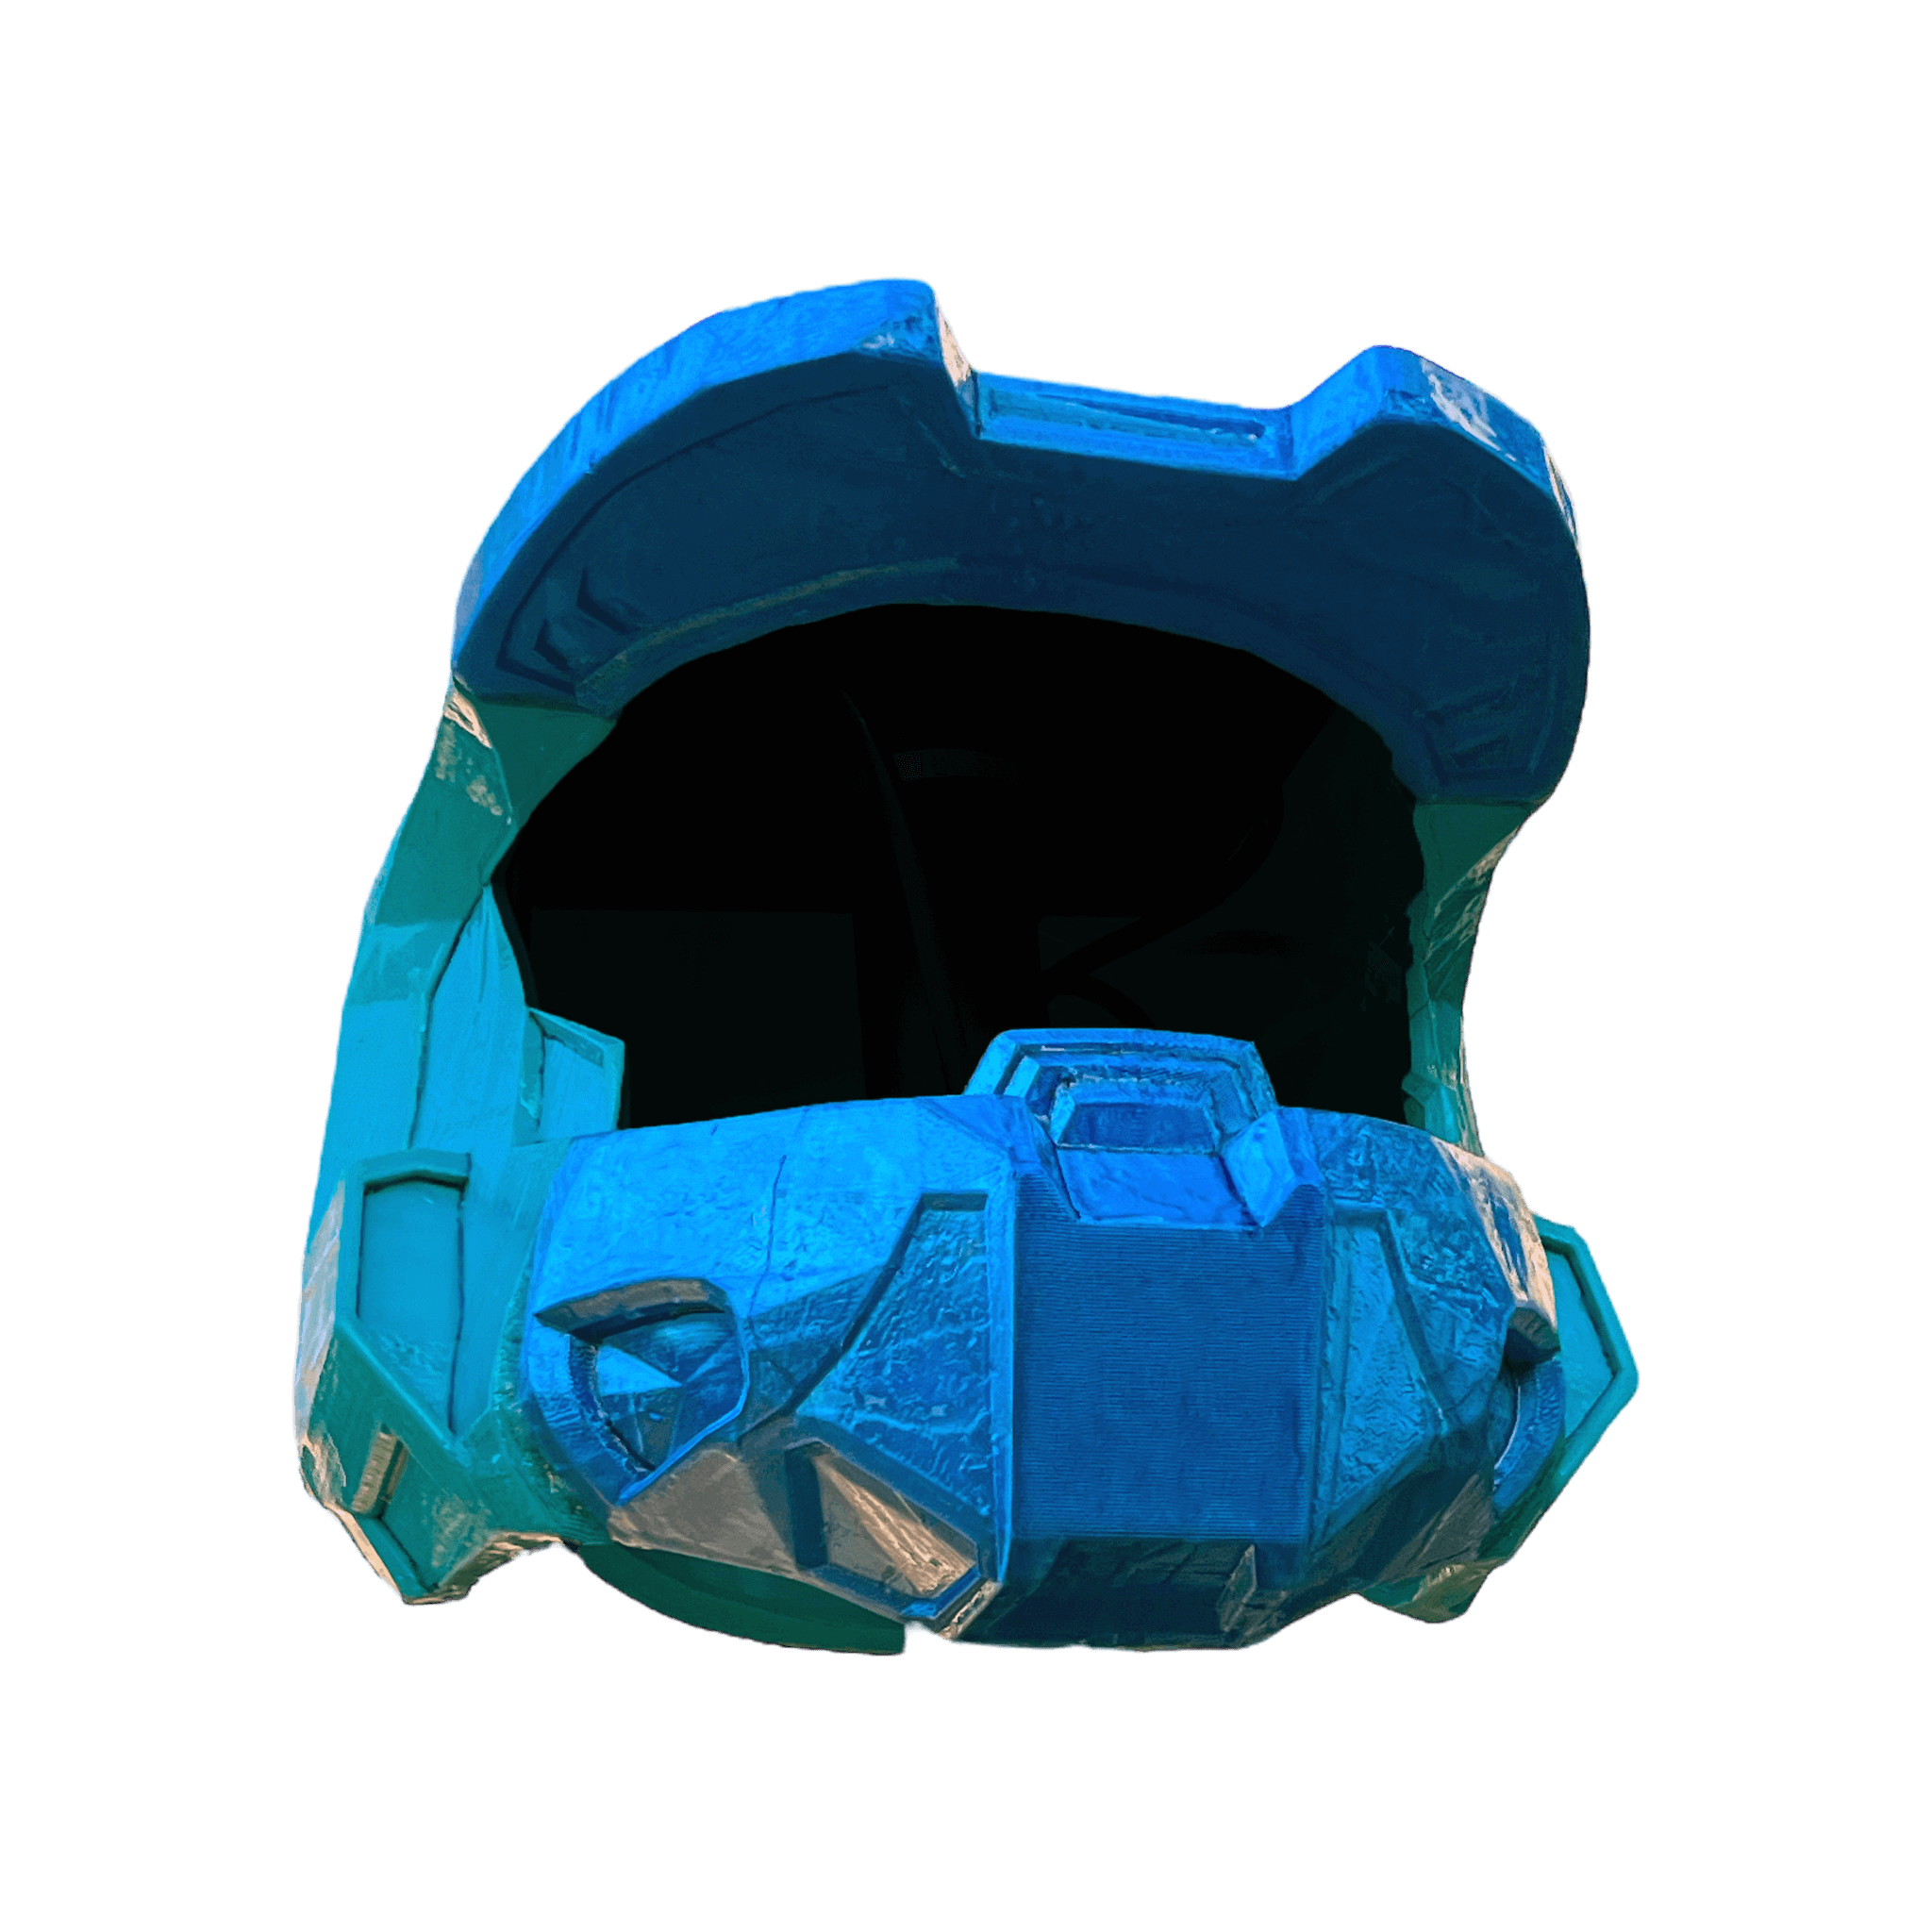 Halo Helmet 3D Printed.png